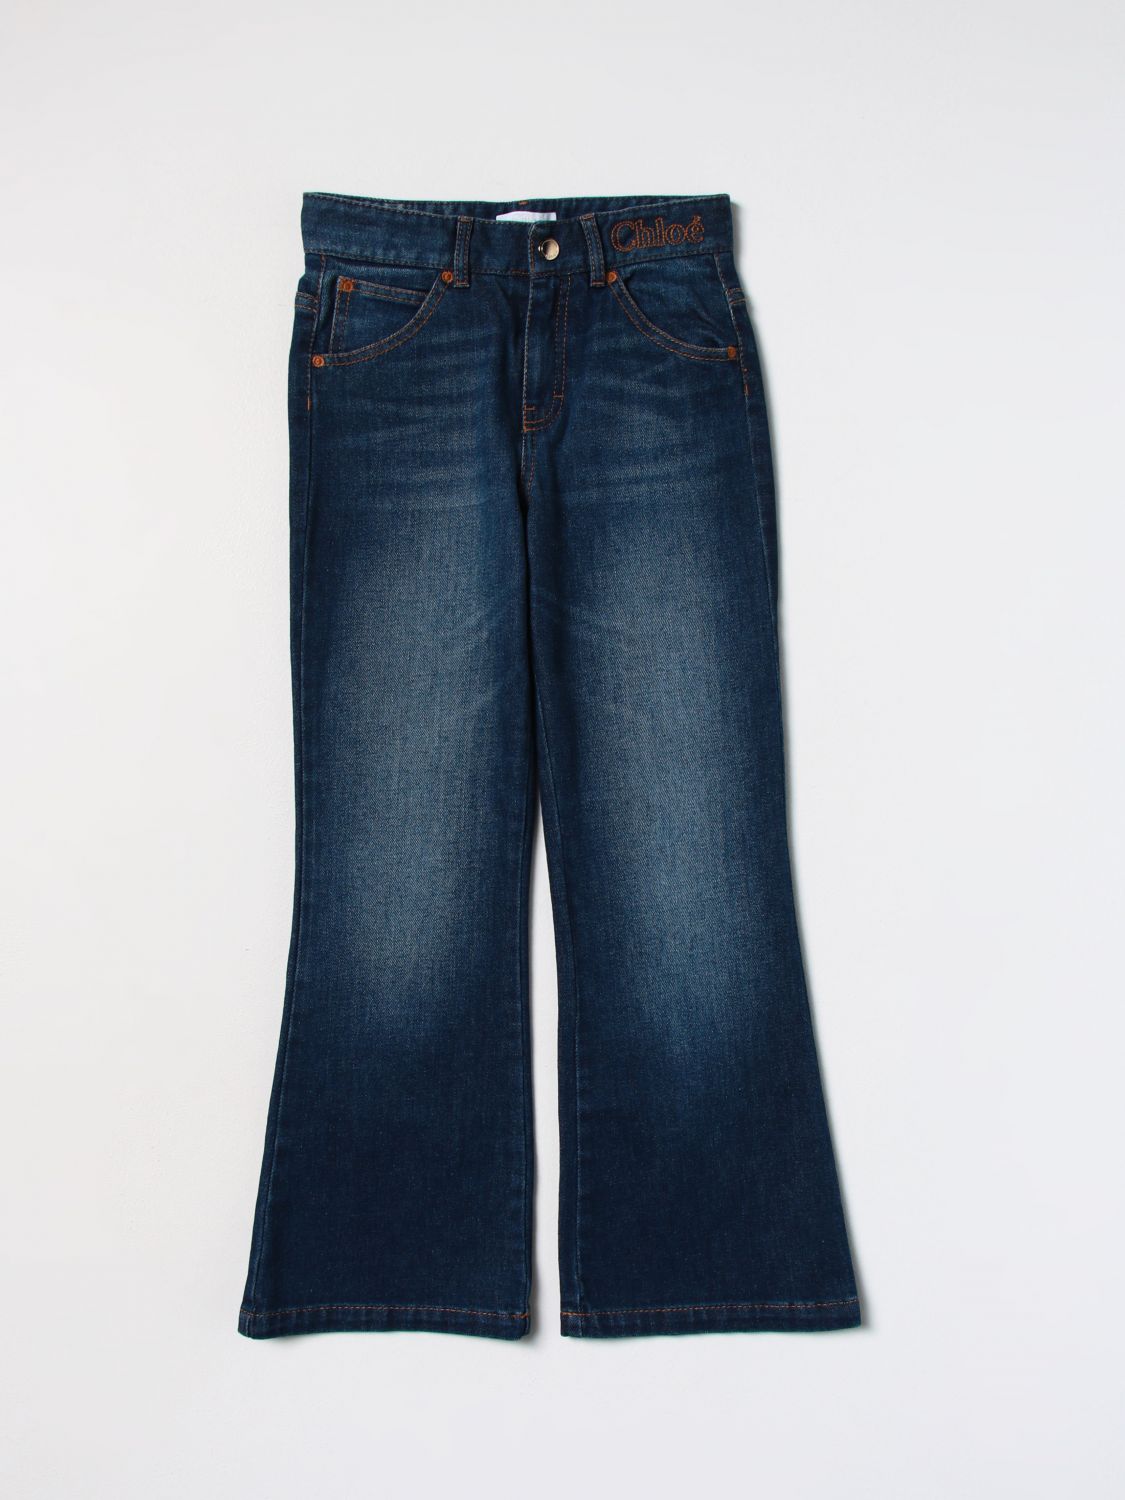 Chloé Kids' Denim Jeans In Blue